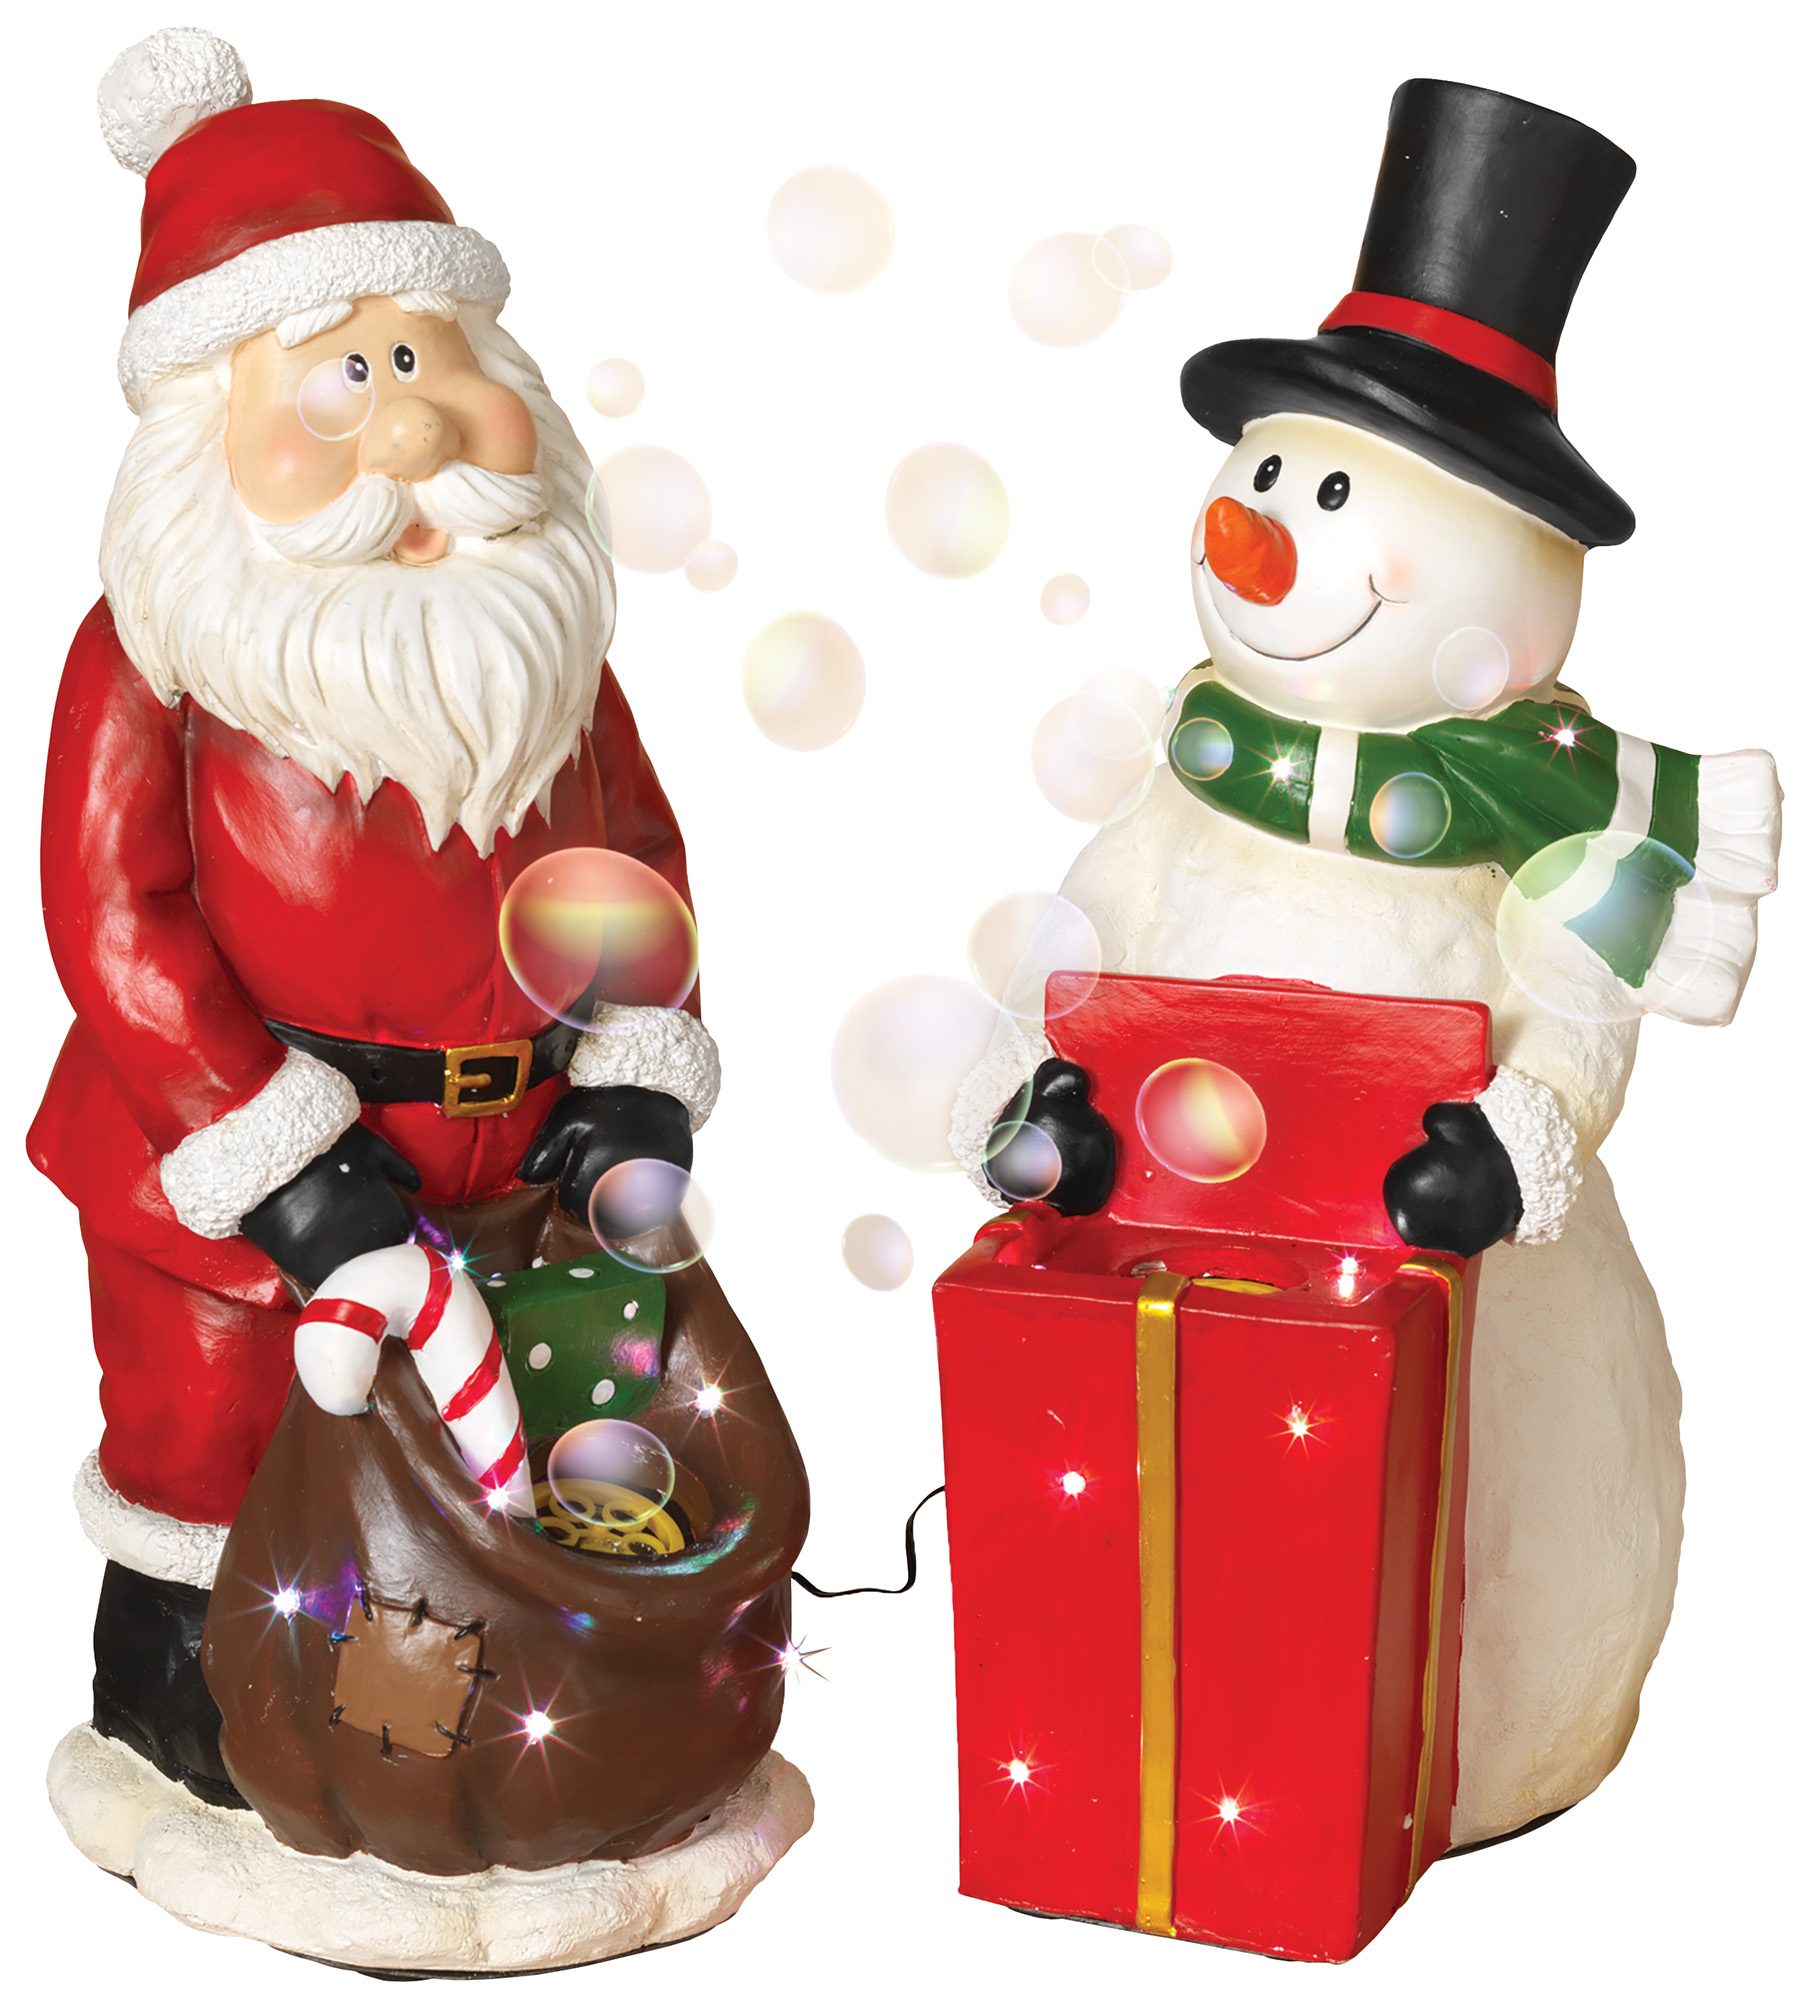 Singing Snowman Christmas MUSIC MOTION Santa's World ANIMATED Kurt Adler VTG 